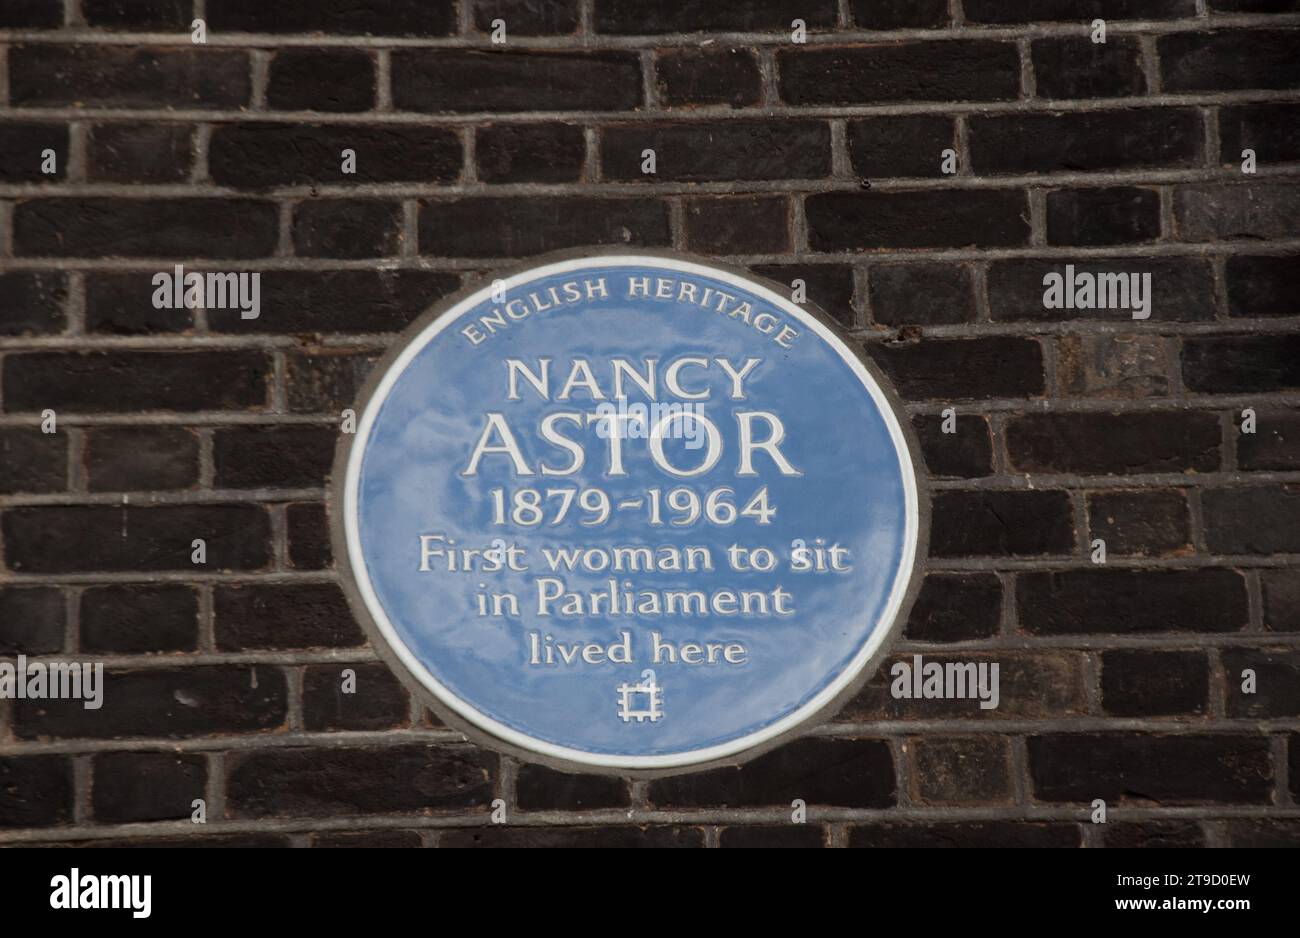 Targa indicante che Nancy Astor, la prima donna parlamentare del Regno Unito, viveva in questo edificio, il Naval and Military Club, St James Square, Londra, Regno Unito Foto Stock